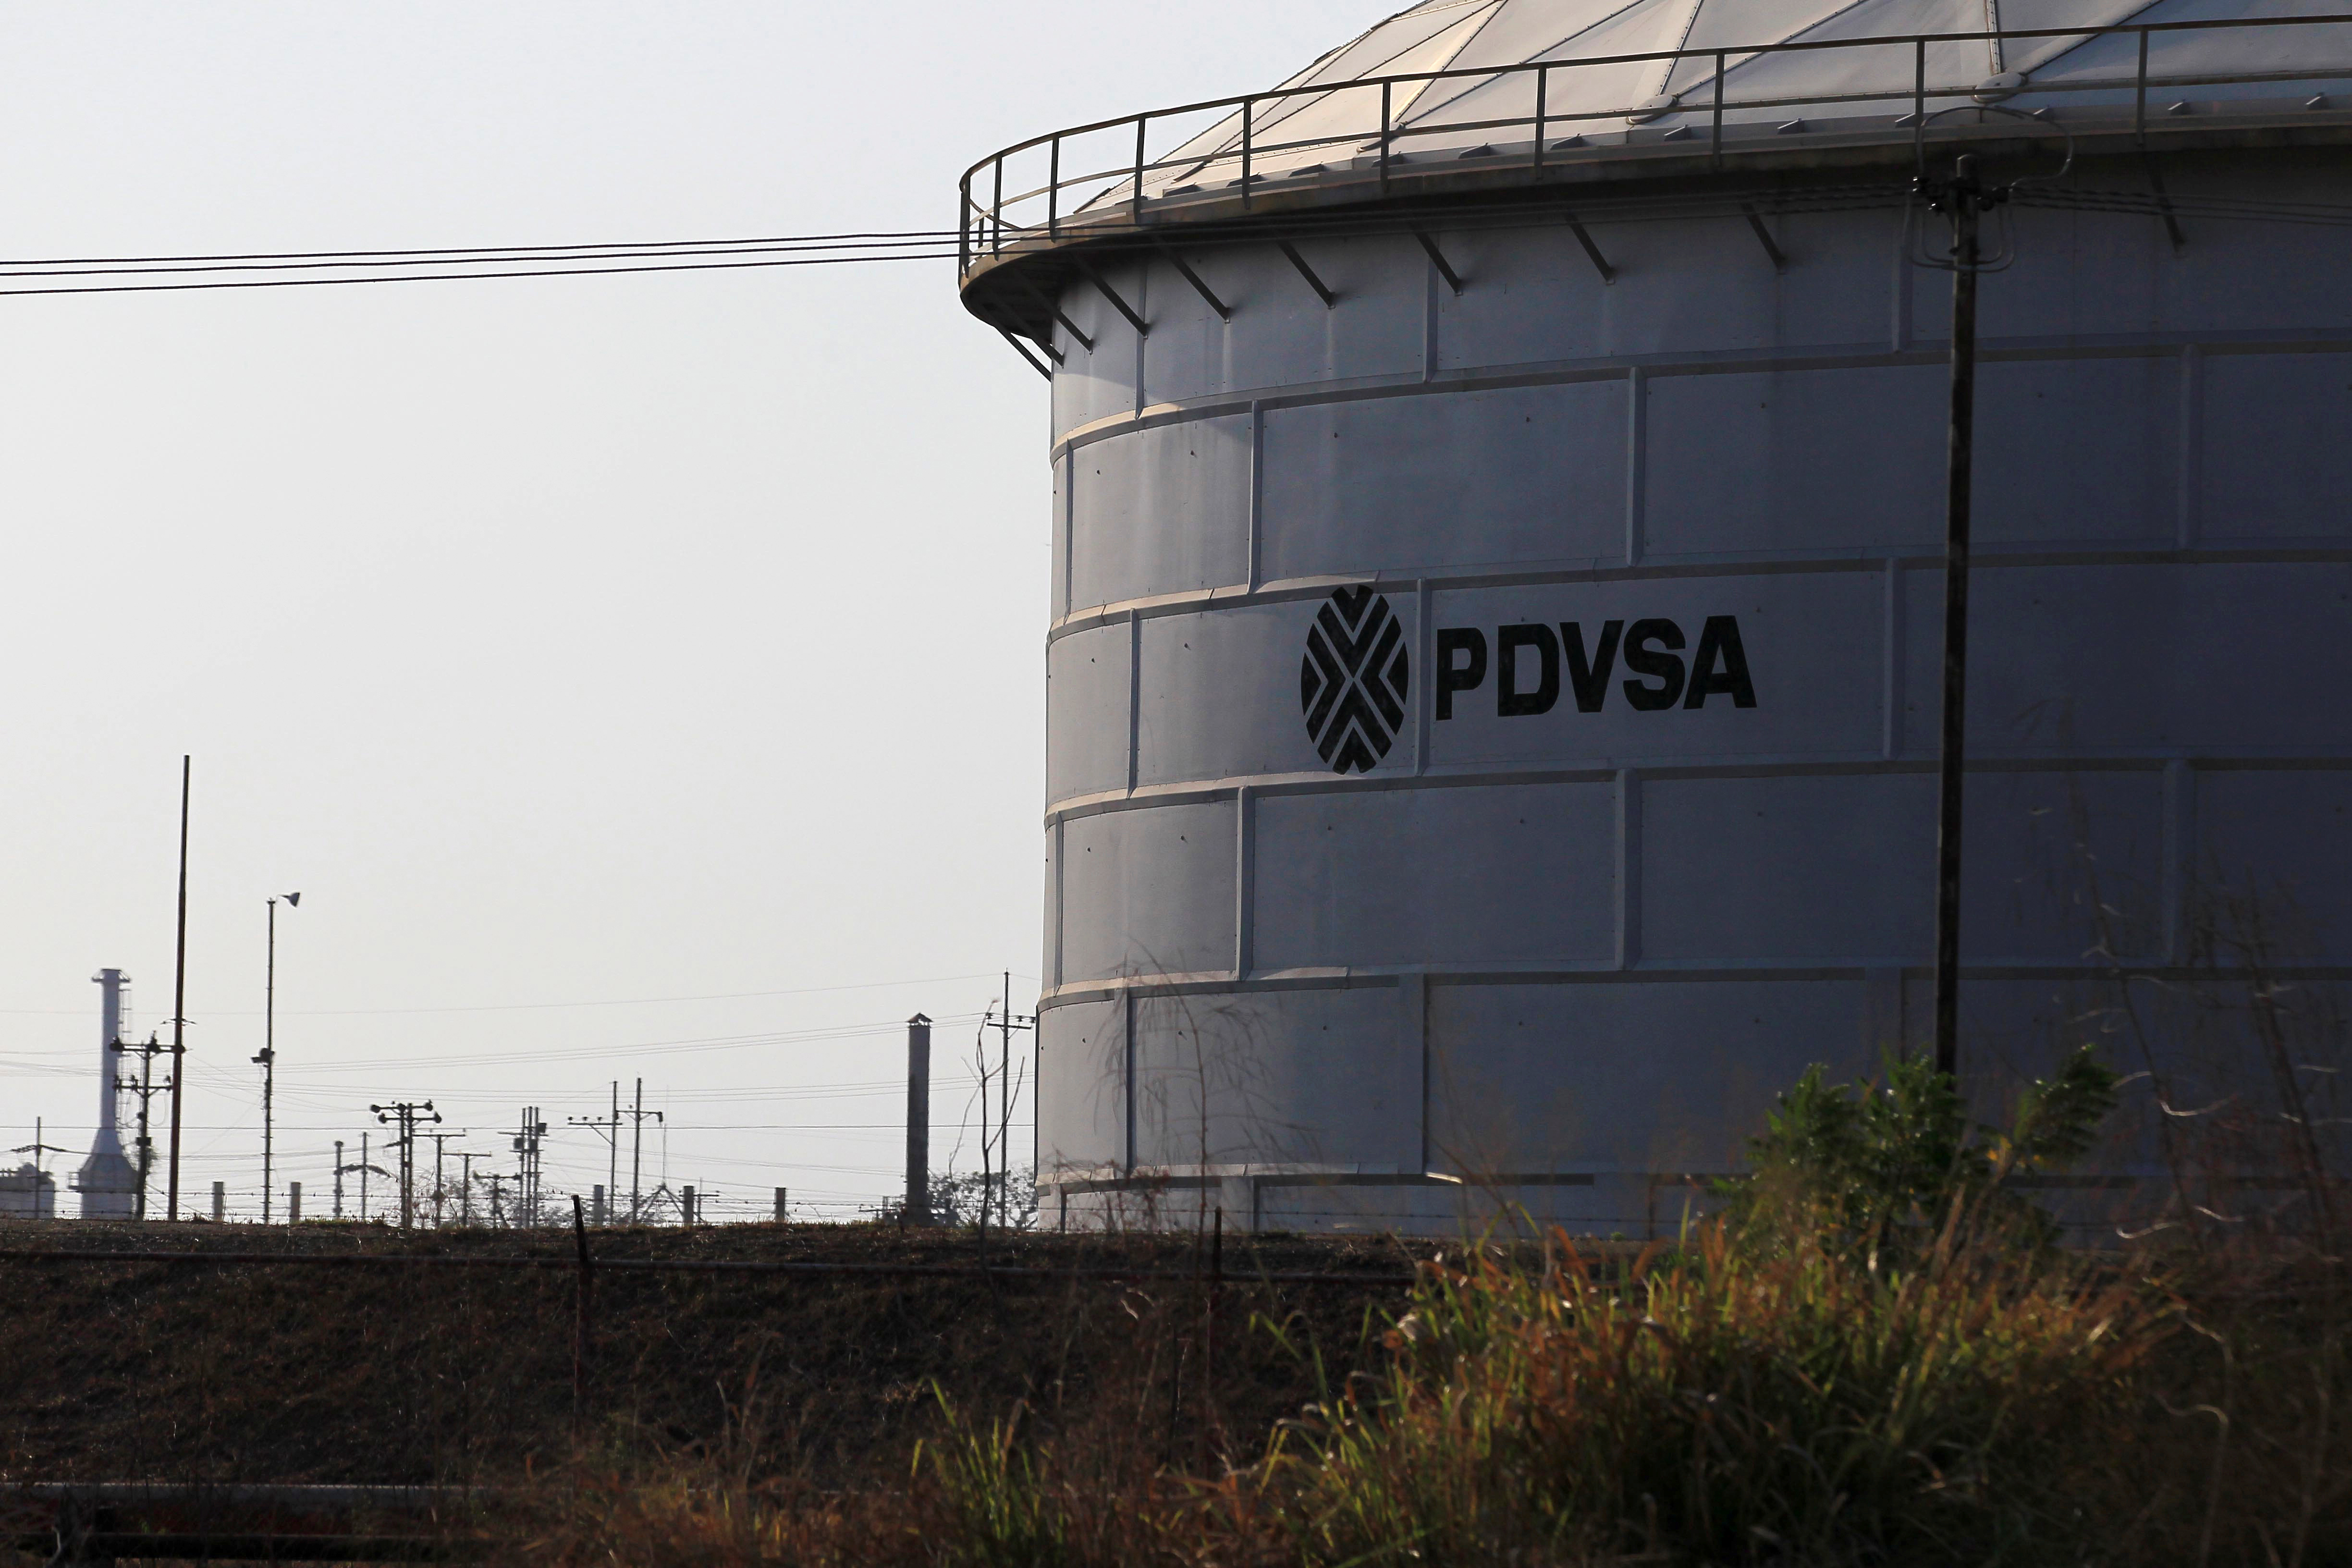 Especialista señaló que Pdvsa terminará el año bombeando 800 mil barriles diarios de crudo